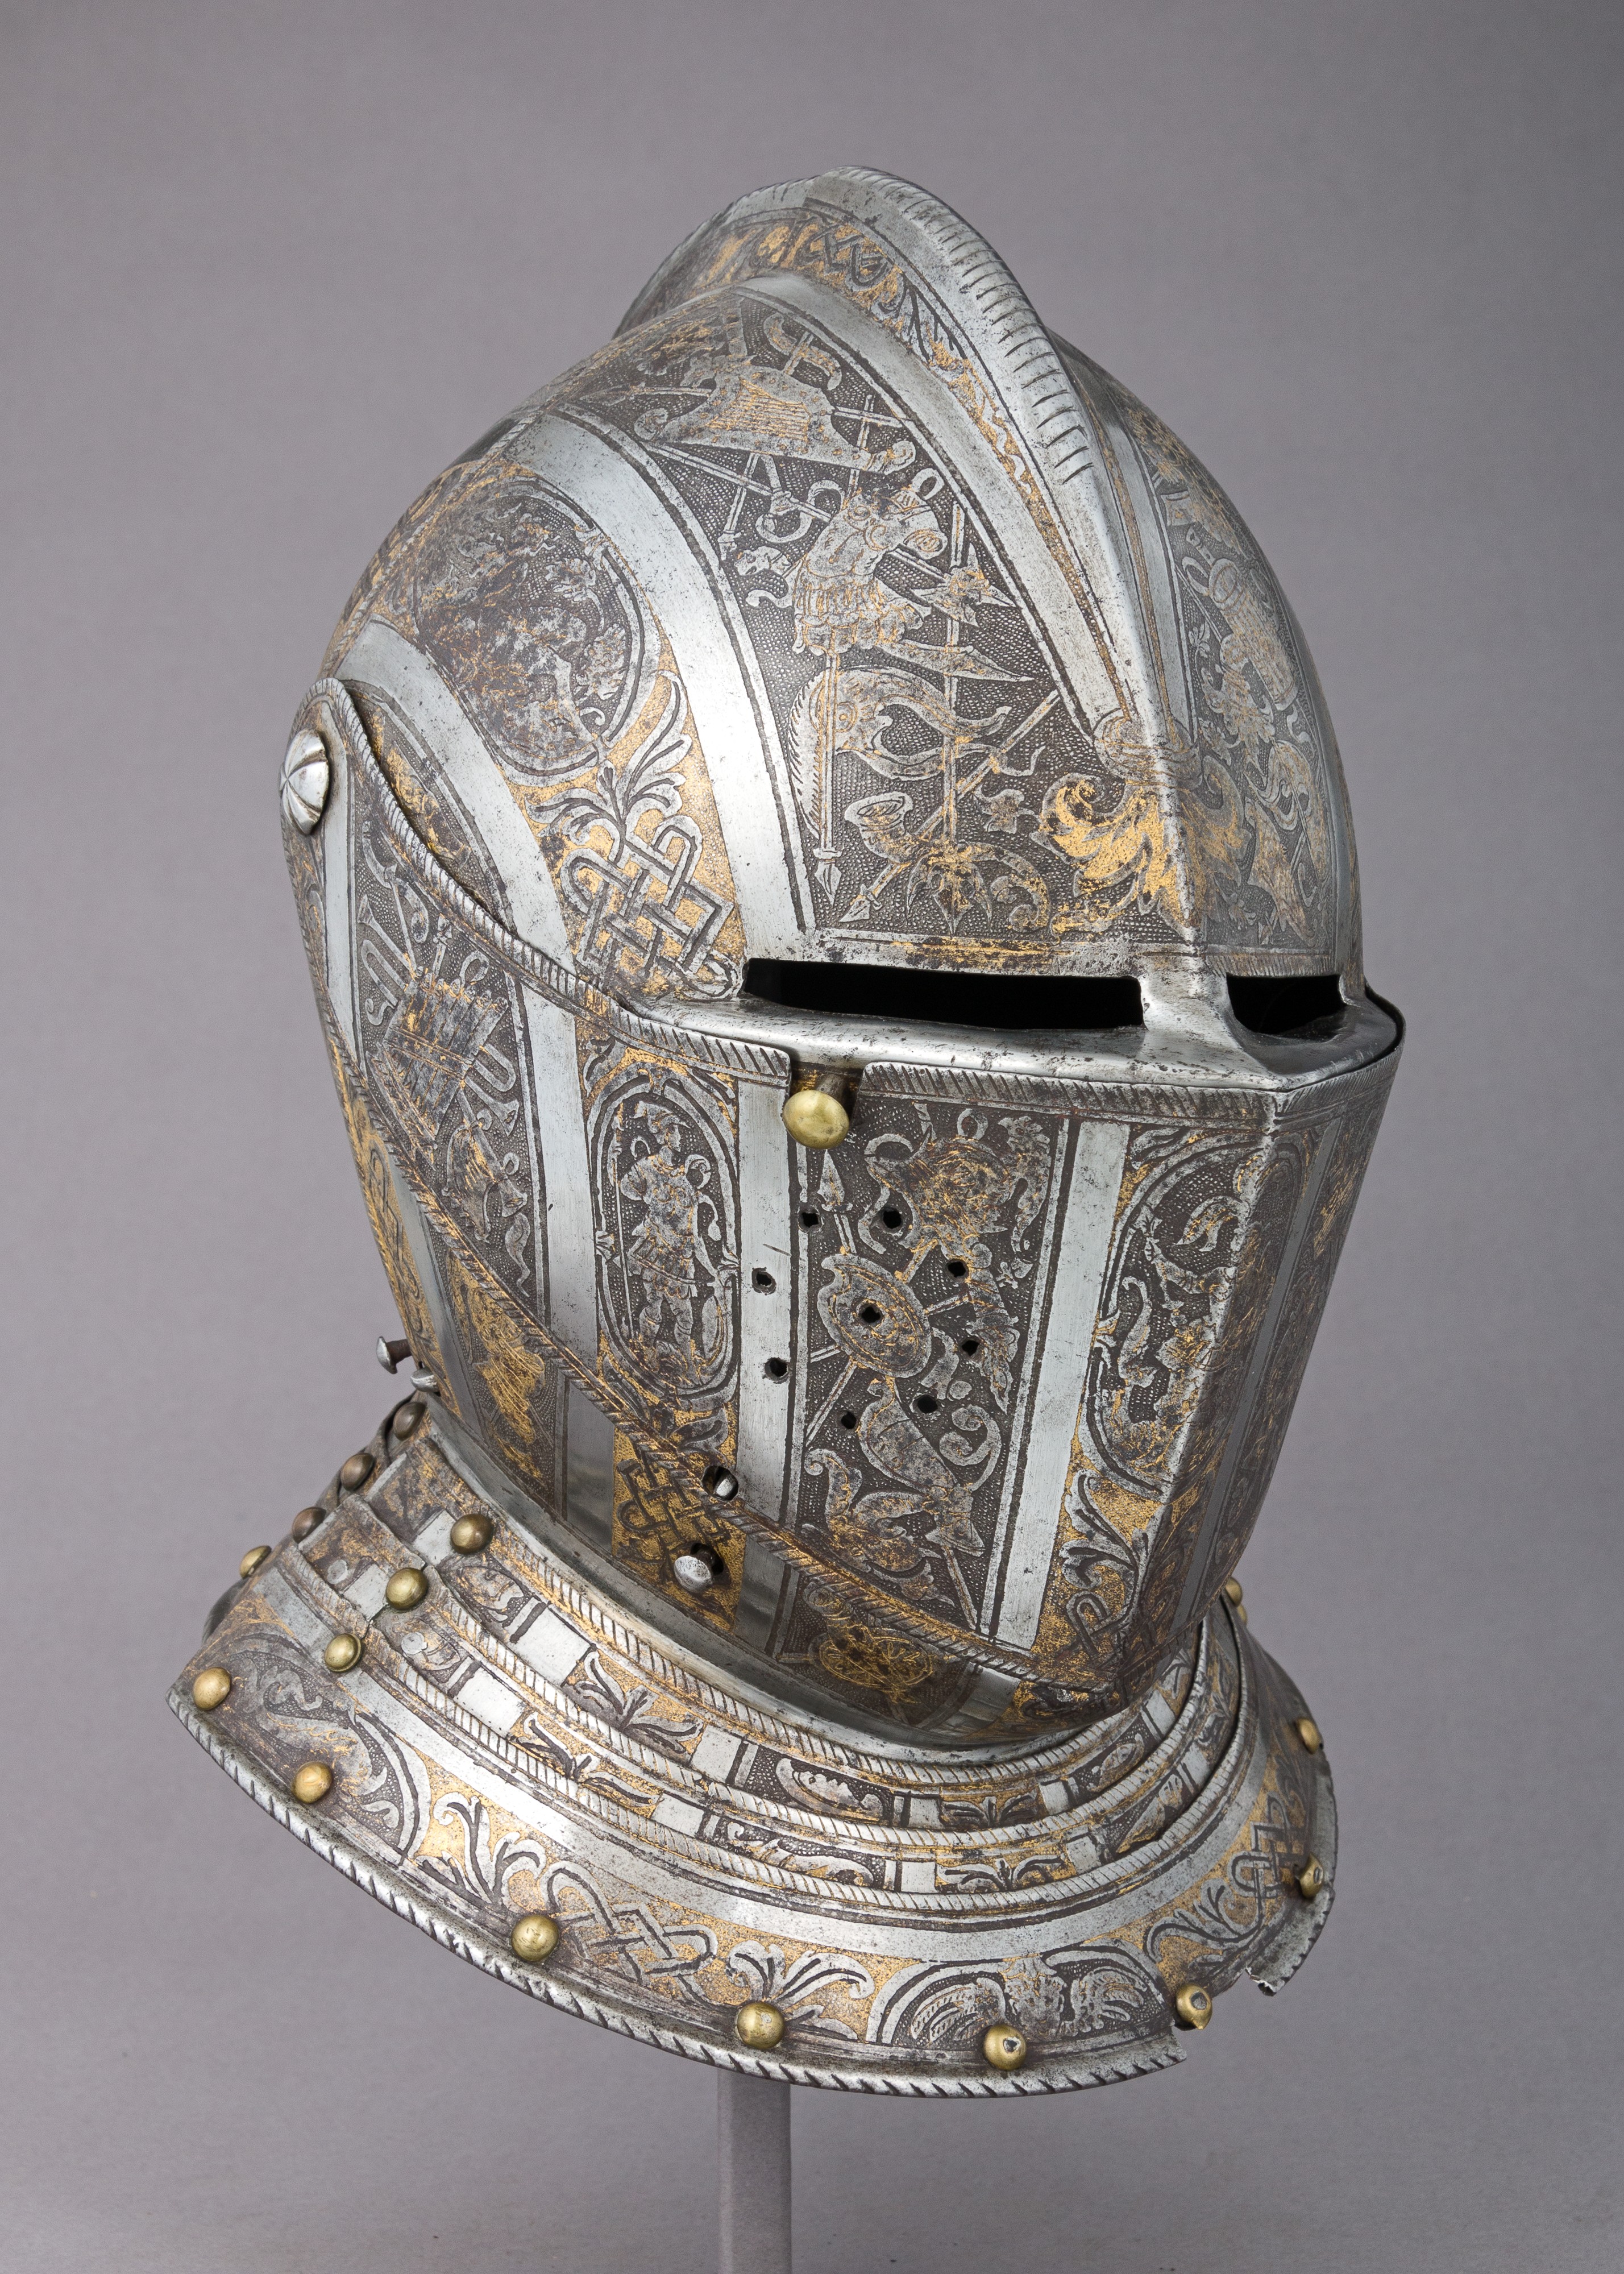 General 2857x4000 armor armet knight engraving european museum portrait display